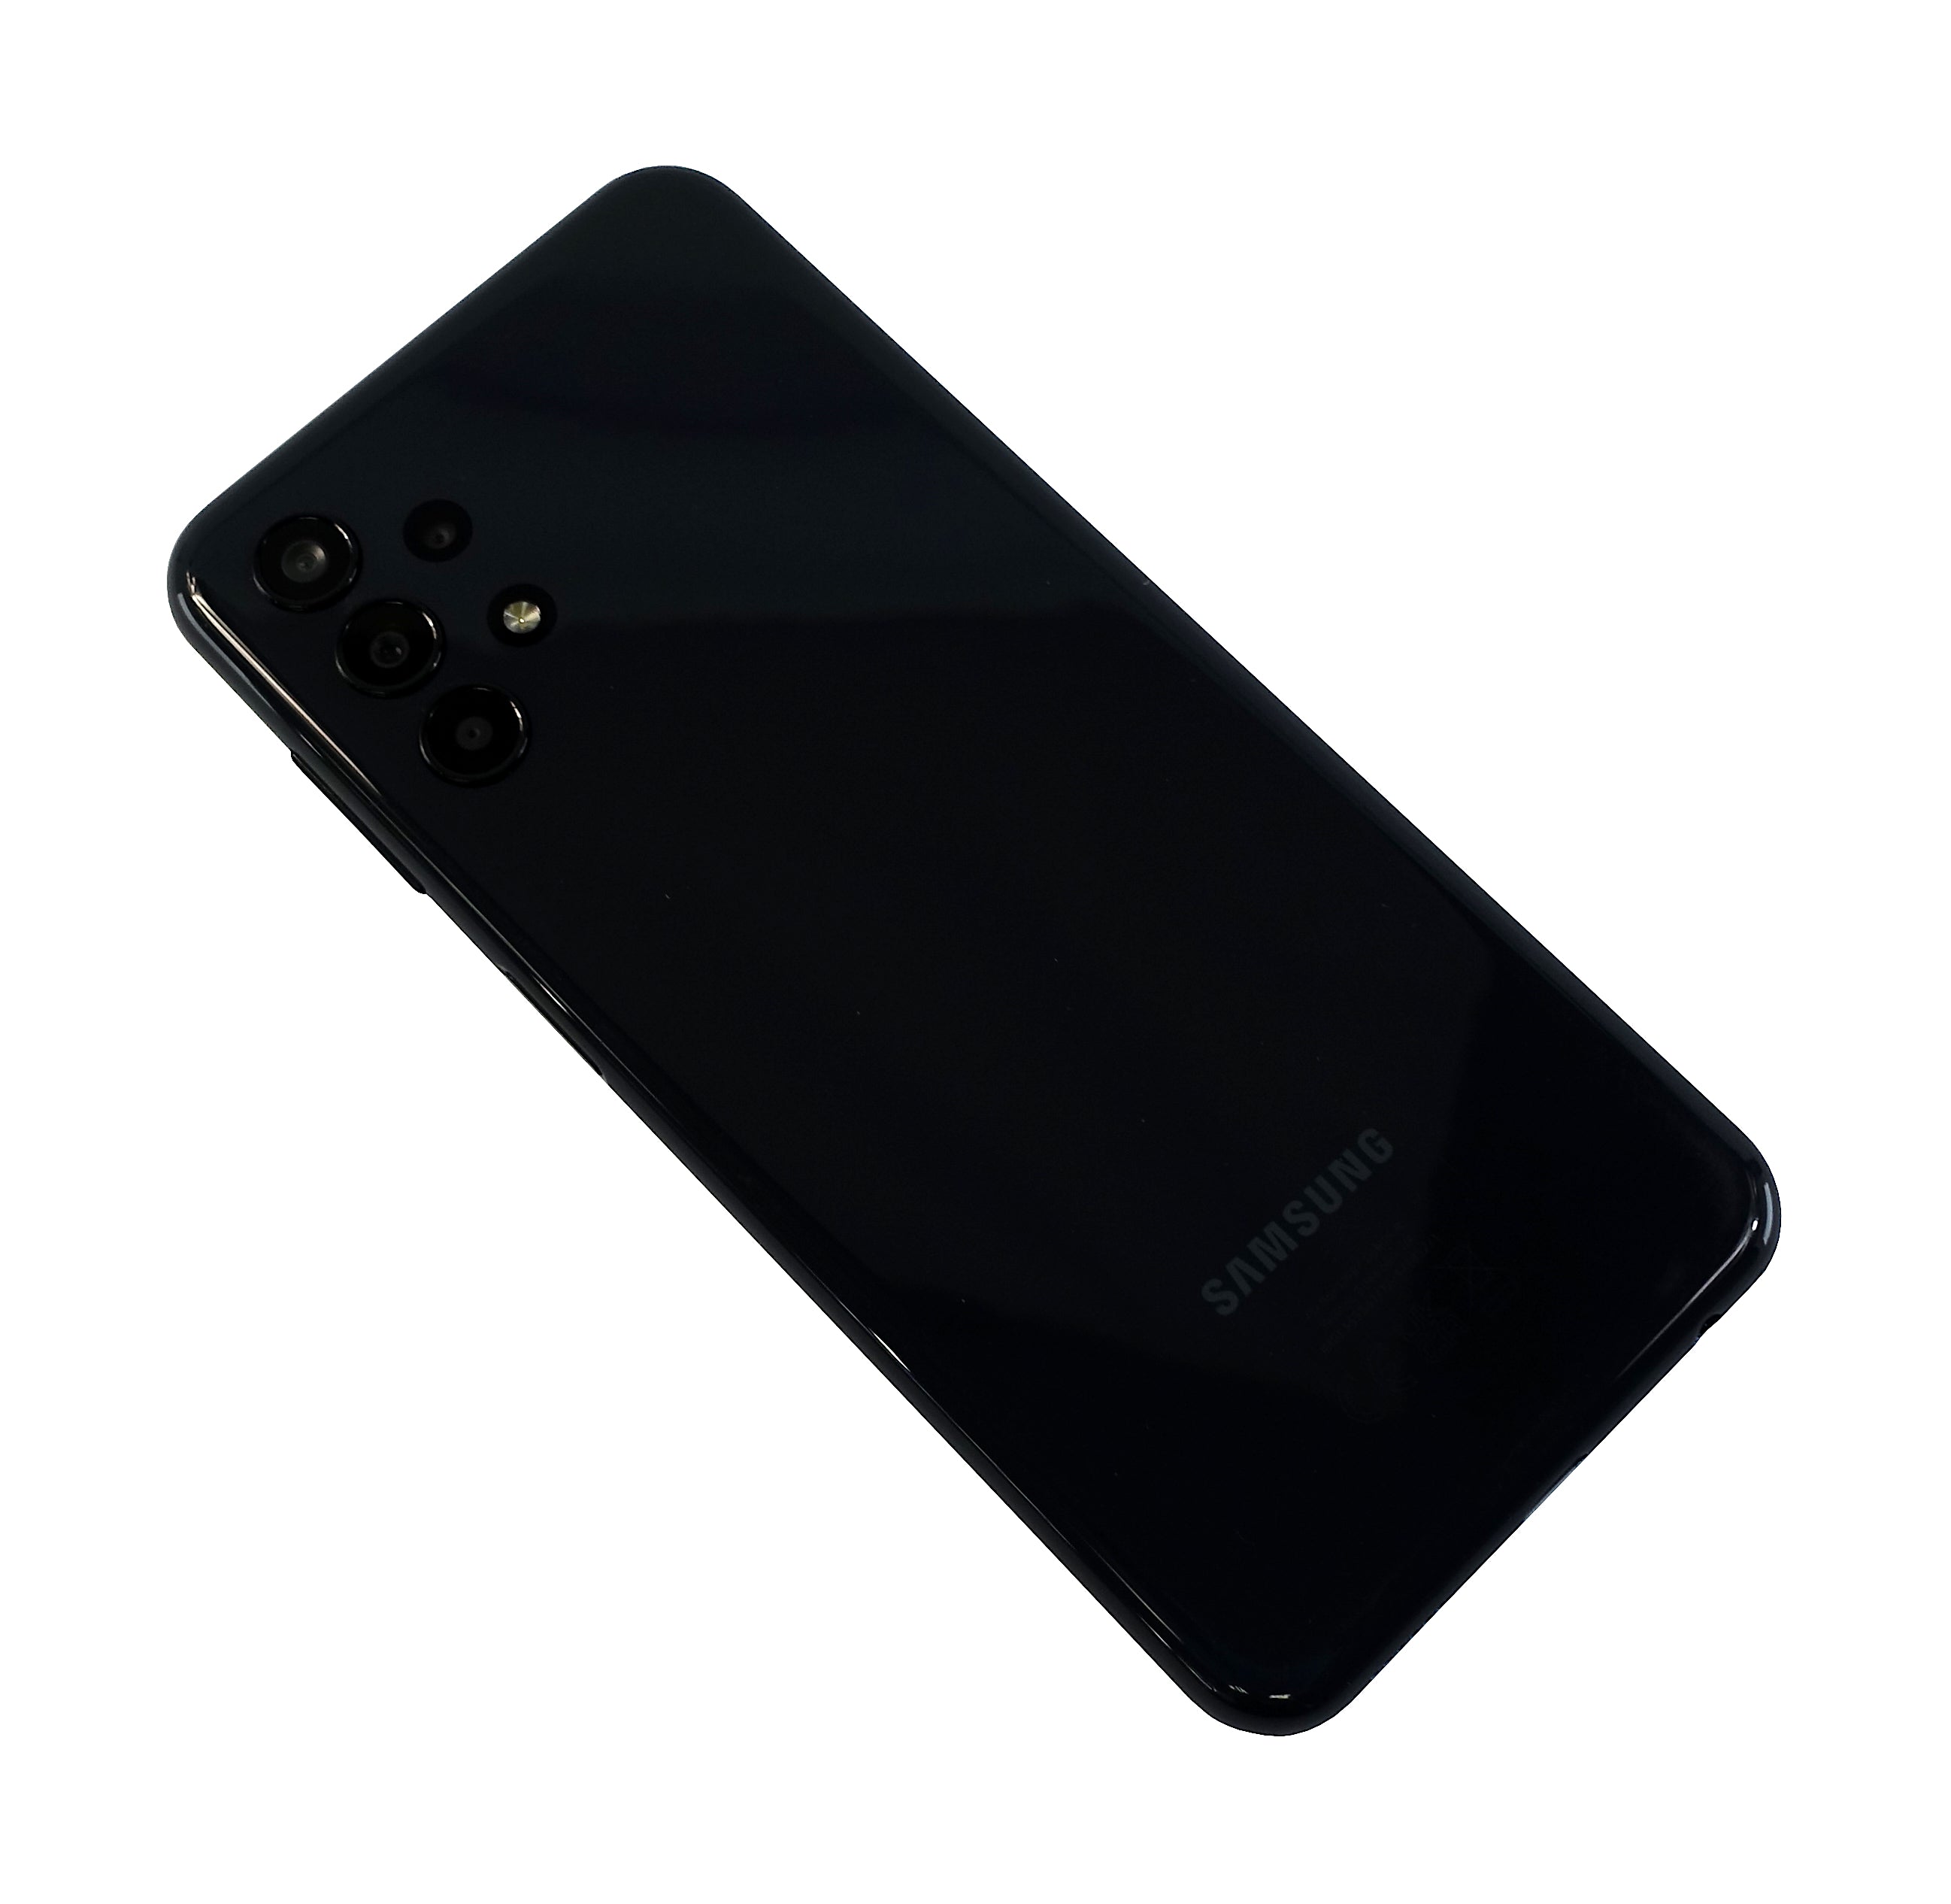 Samsung Galaxy A13 Smartphone, 64GB, Network Unlocked, Black, SM-A137F/DSN